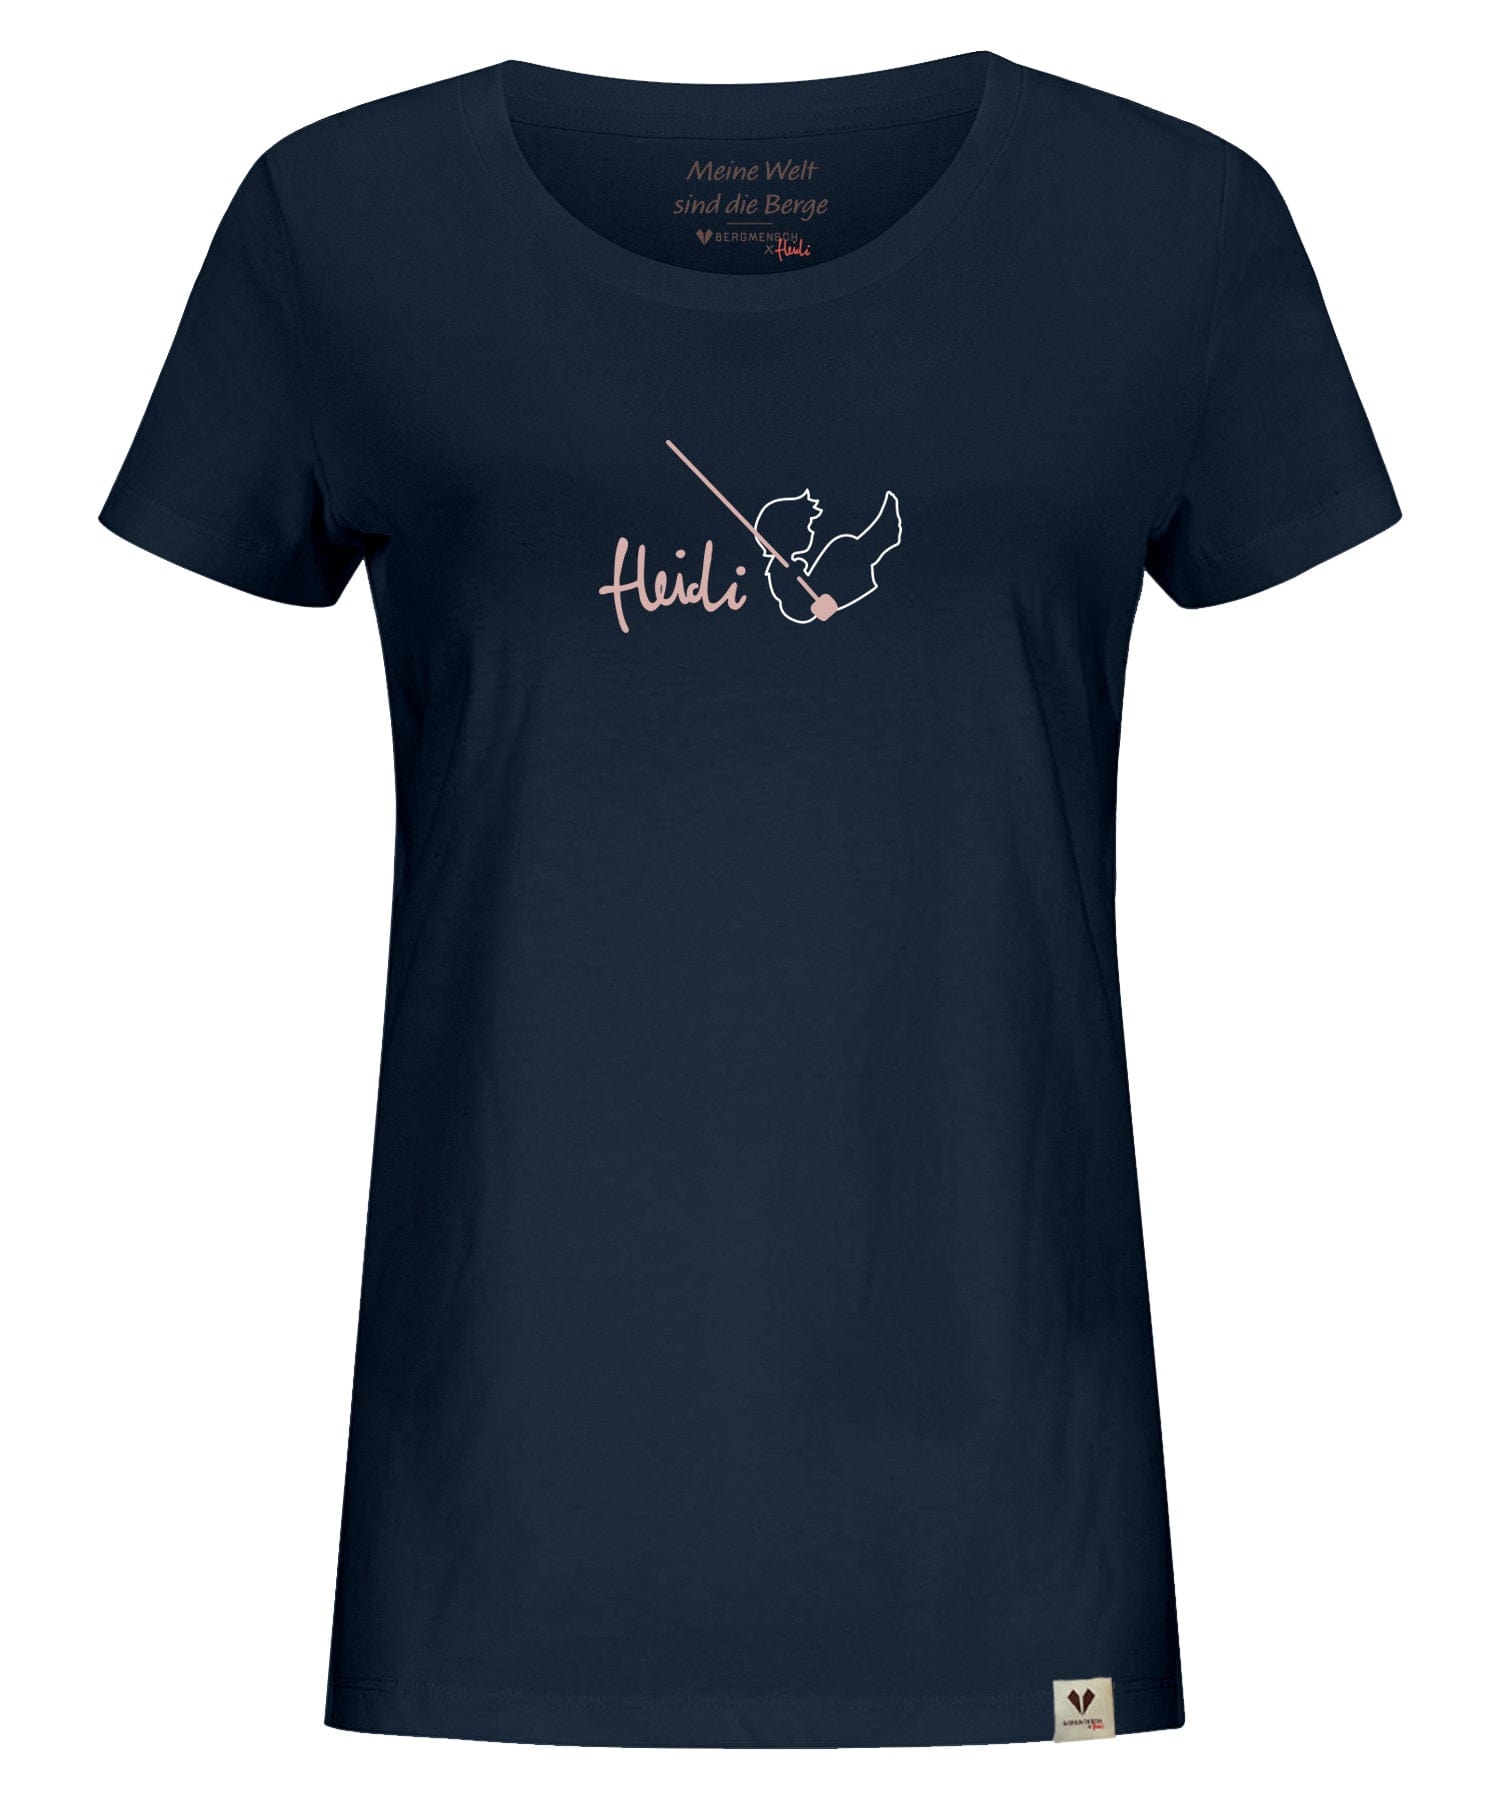 HEIDI - Schaukel - Damen Premium Organic Shirt